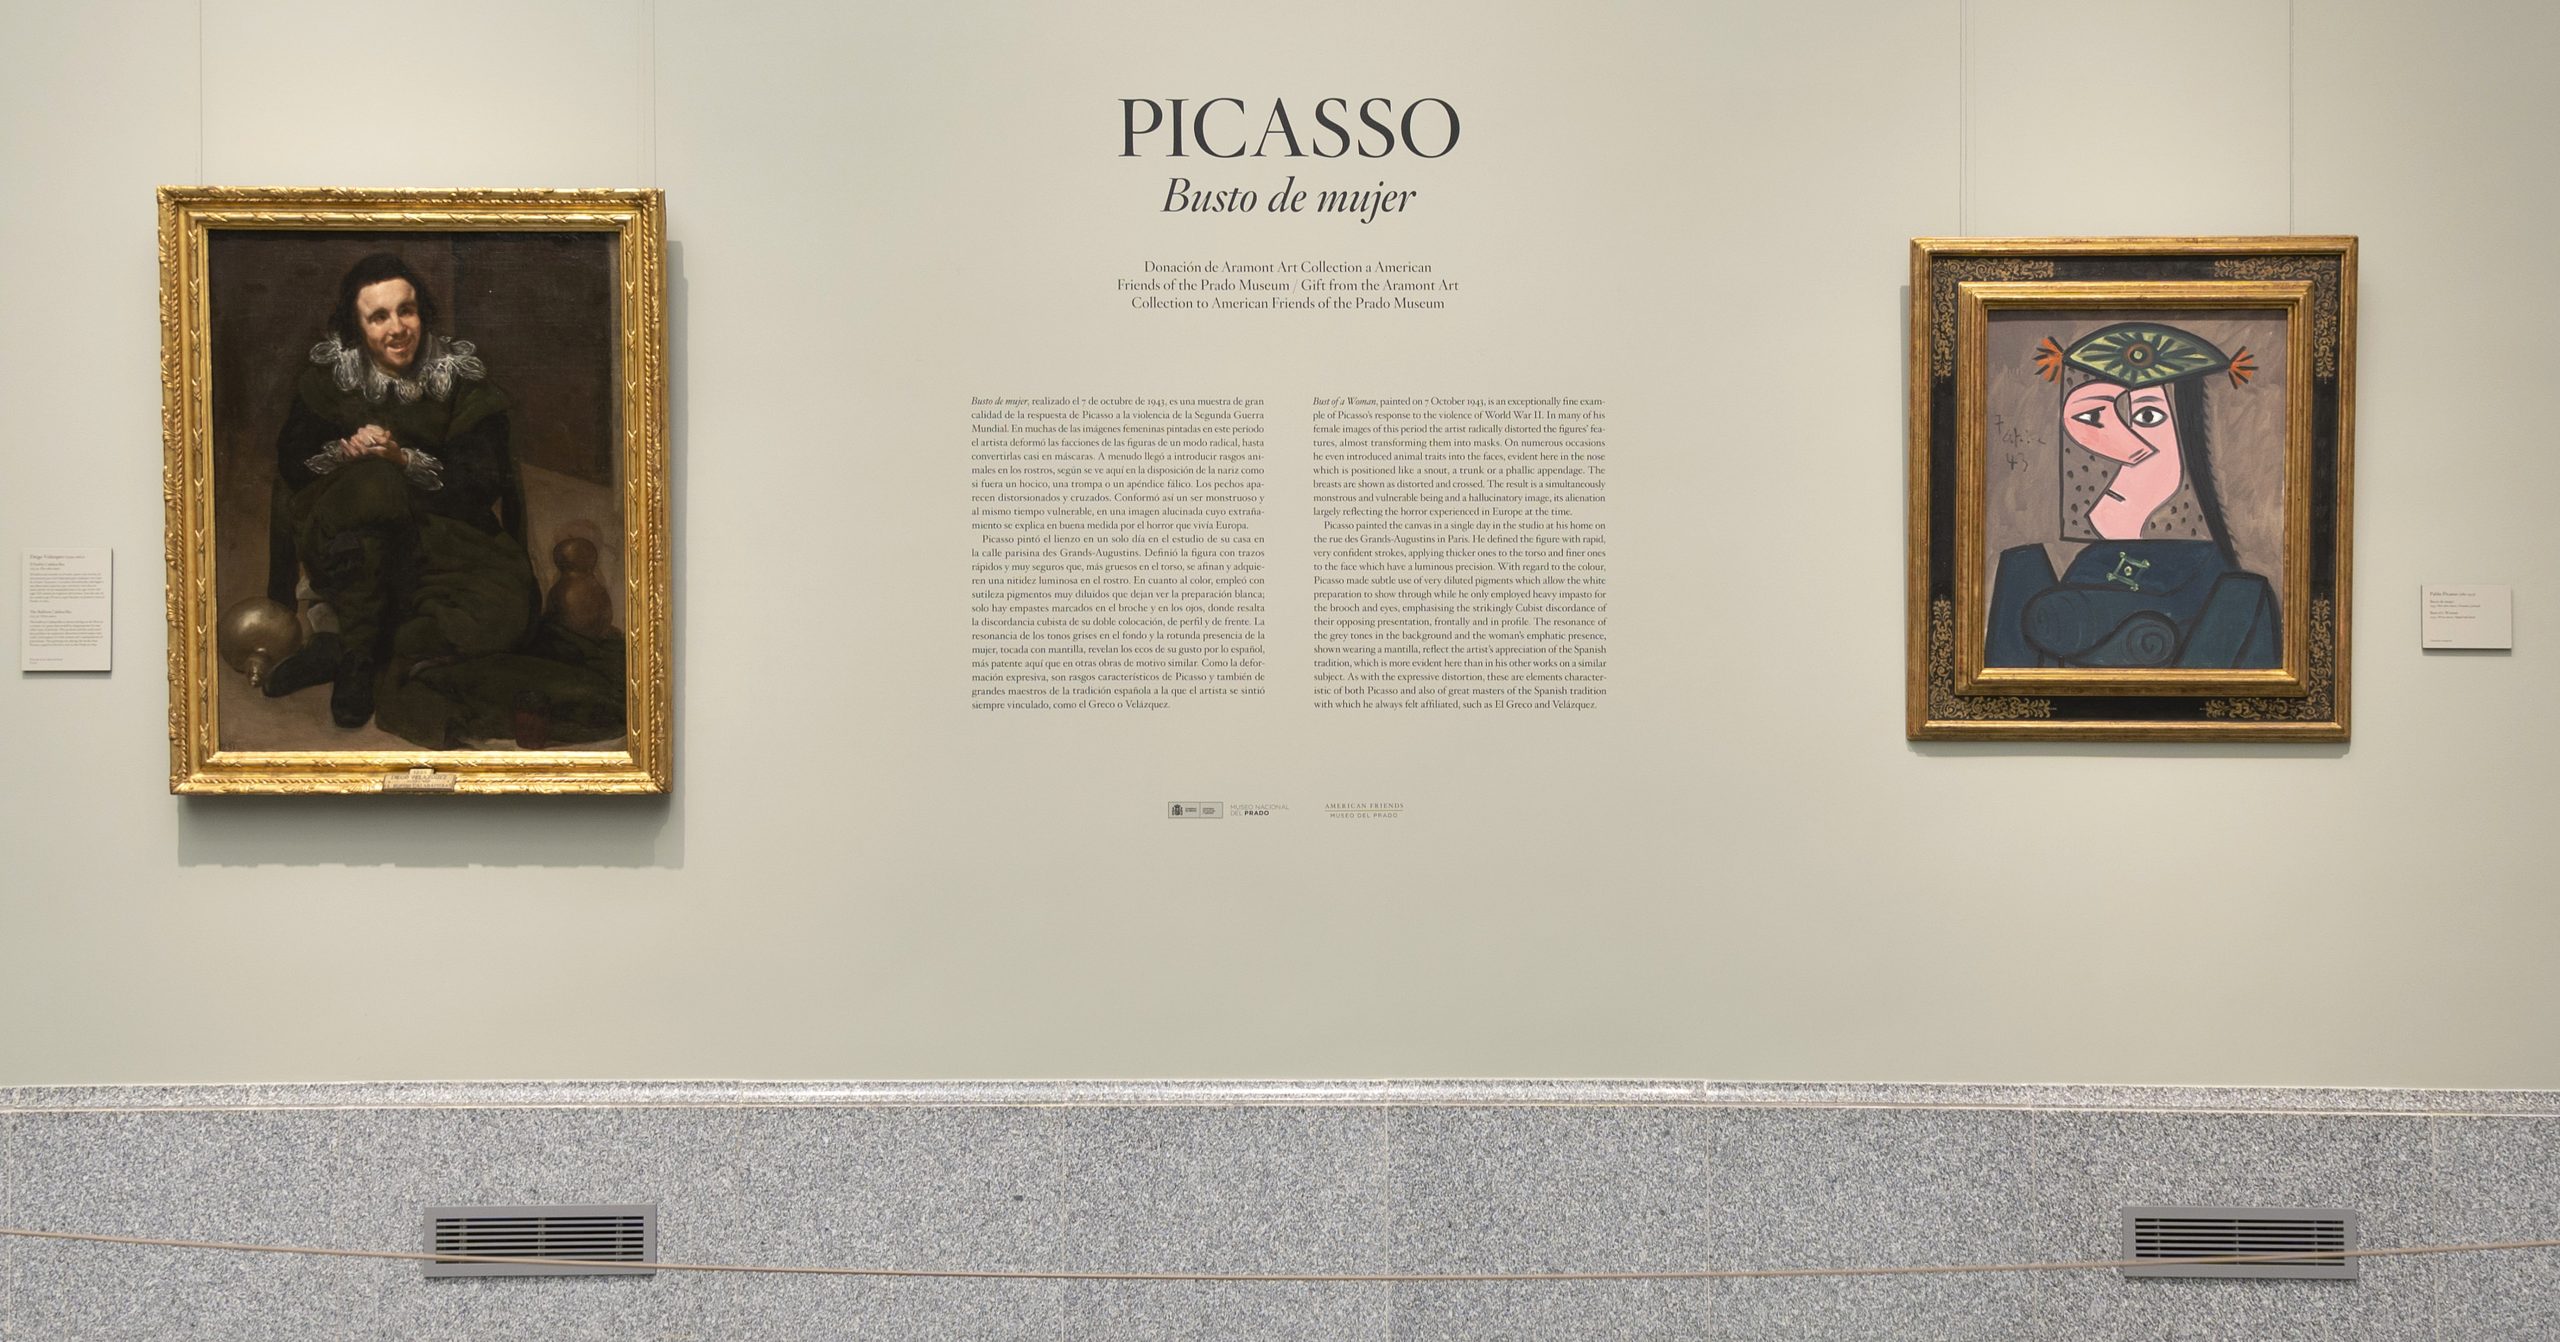 'Busto de mujer' de Picasso en la sala 9 B de edificio Villanueva en el Museo Nacional del Prado. Foto © Museo Nacional del Prado.